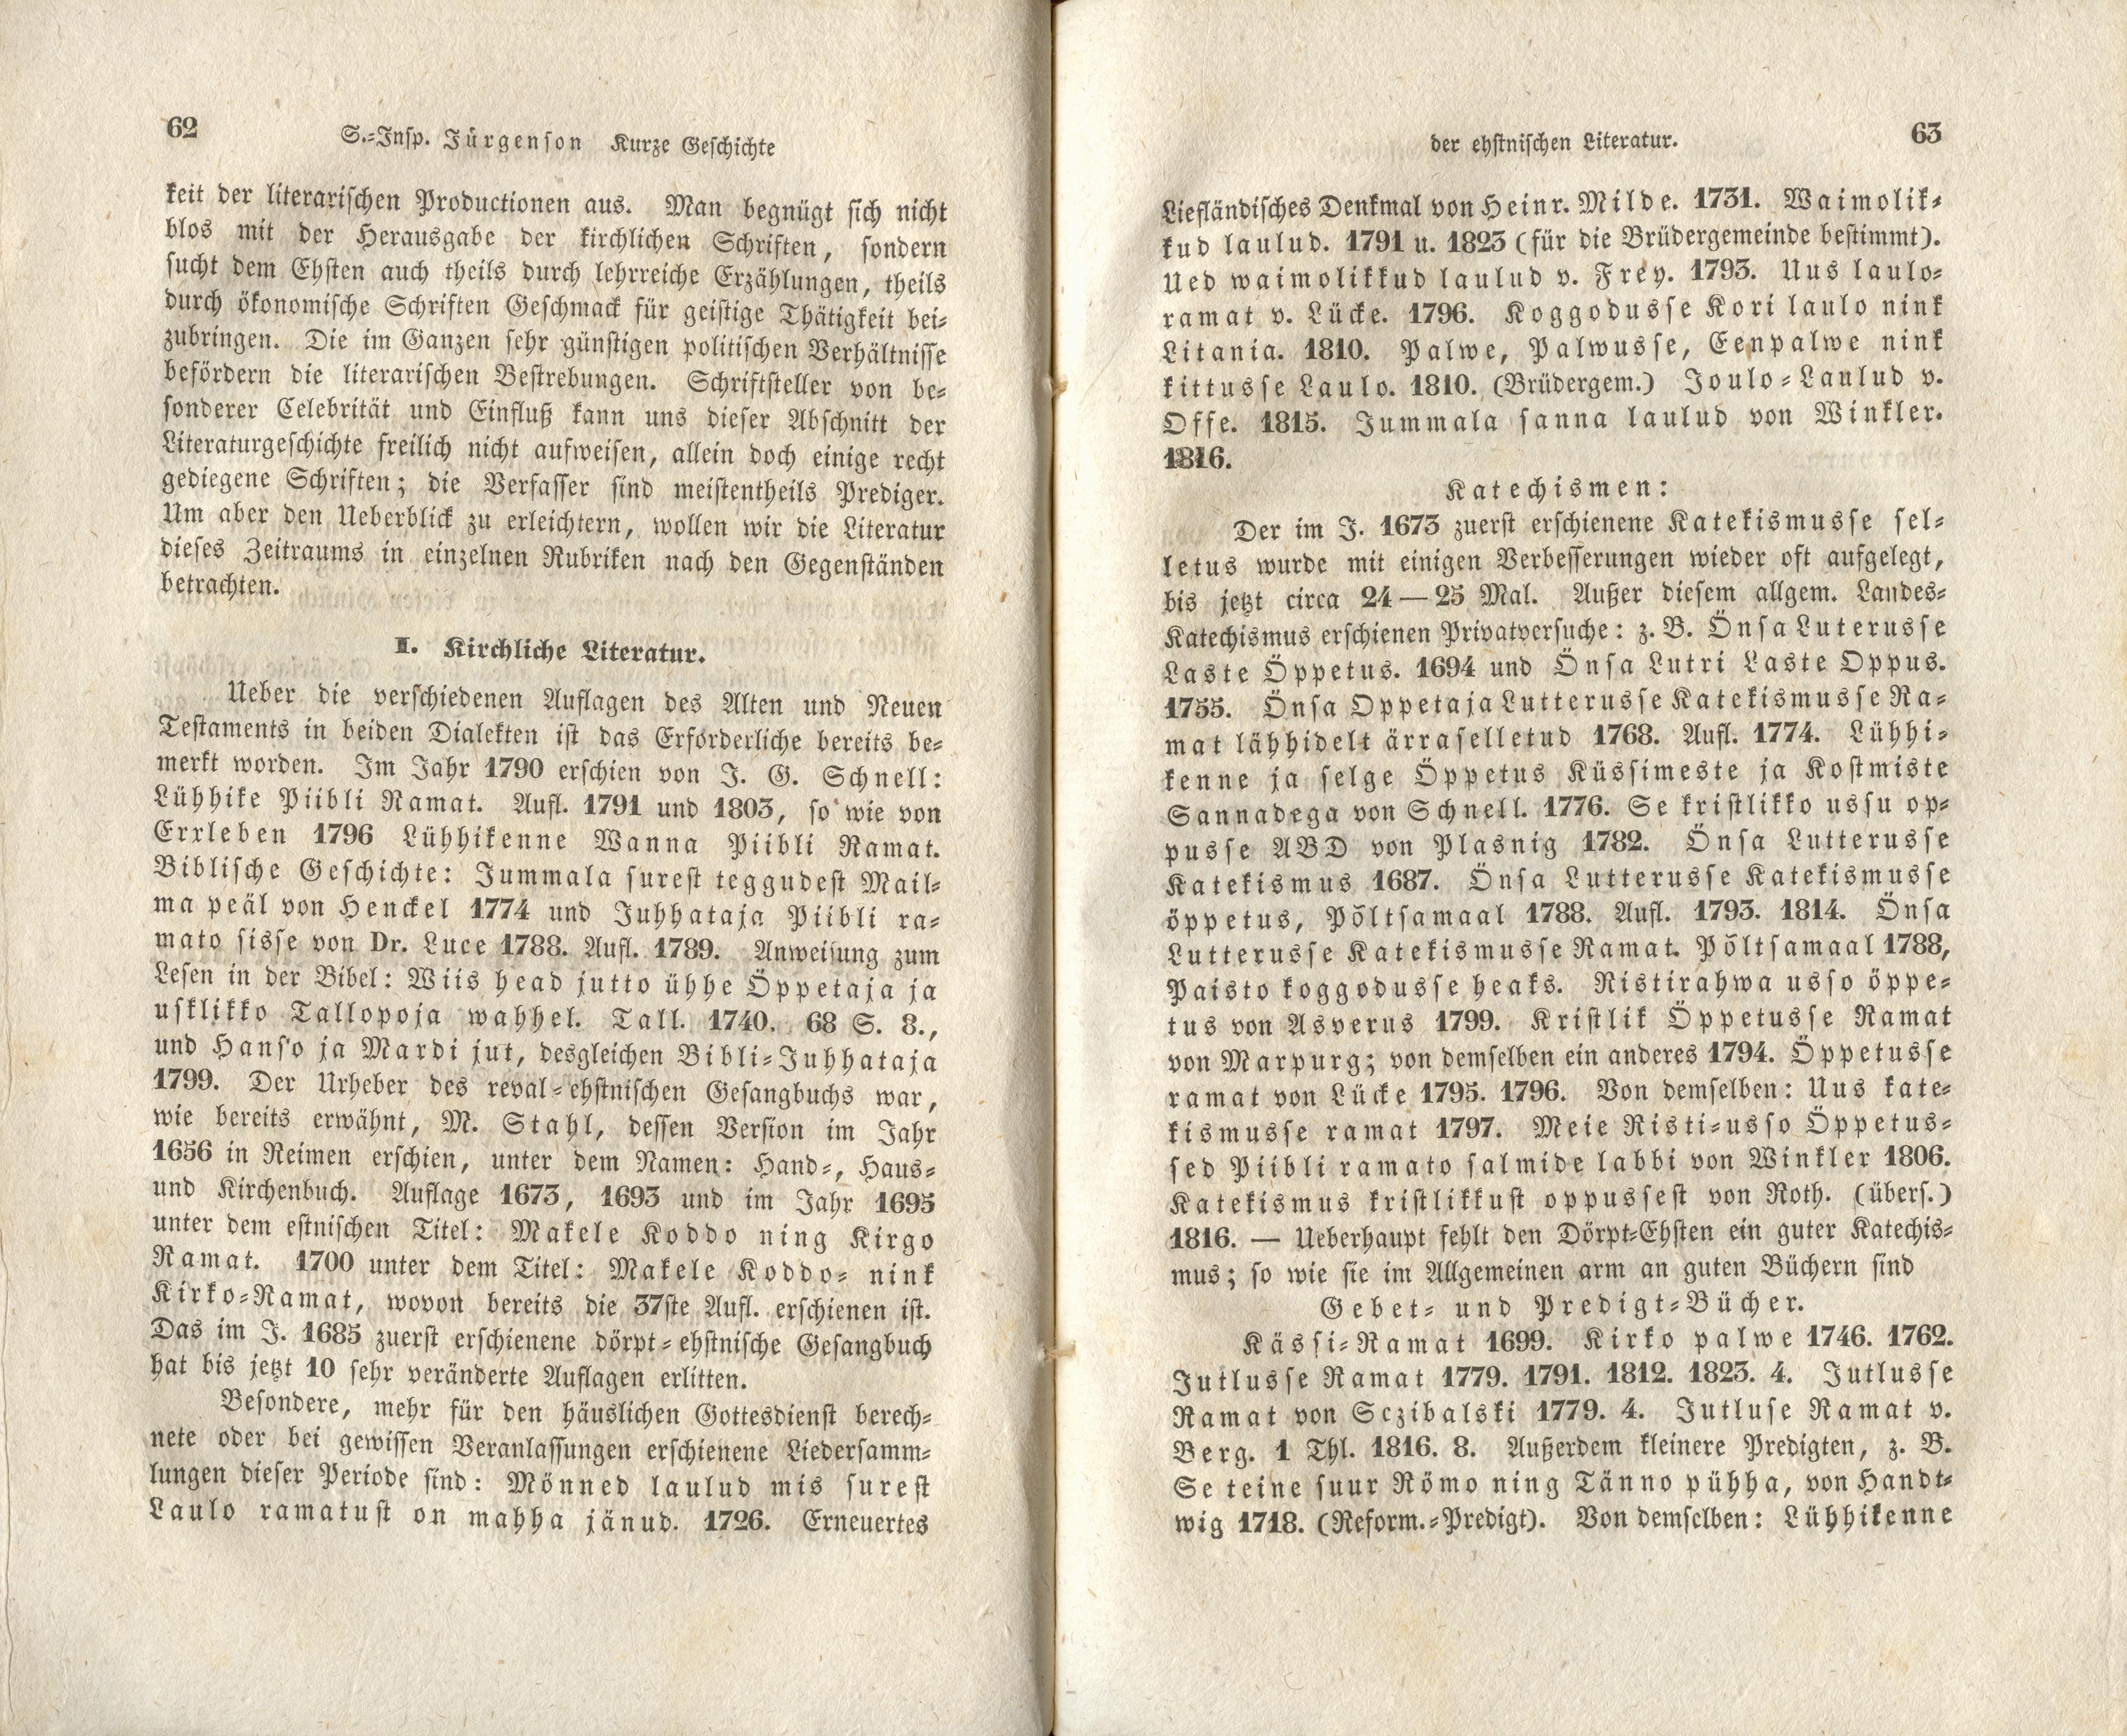 Verhandlungen der GEG [1844] [1/3] (1844) | 3. (62-63) Main body of text